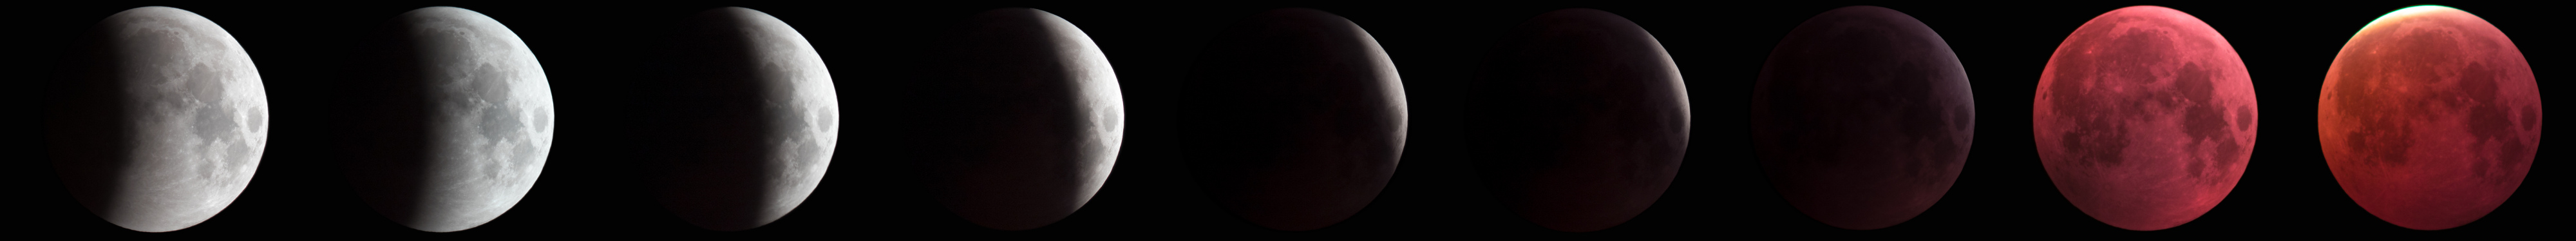 Eclipse de Lune du 21 janvier 2019